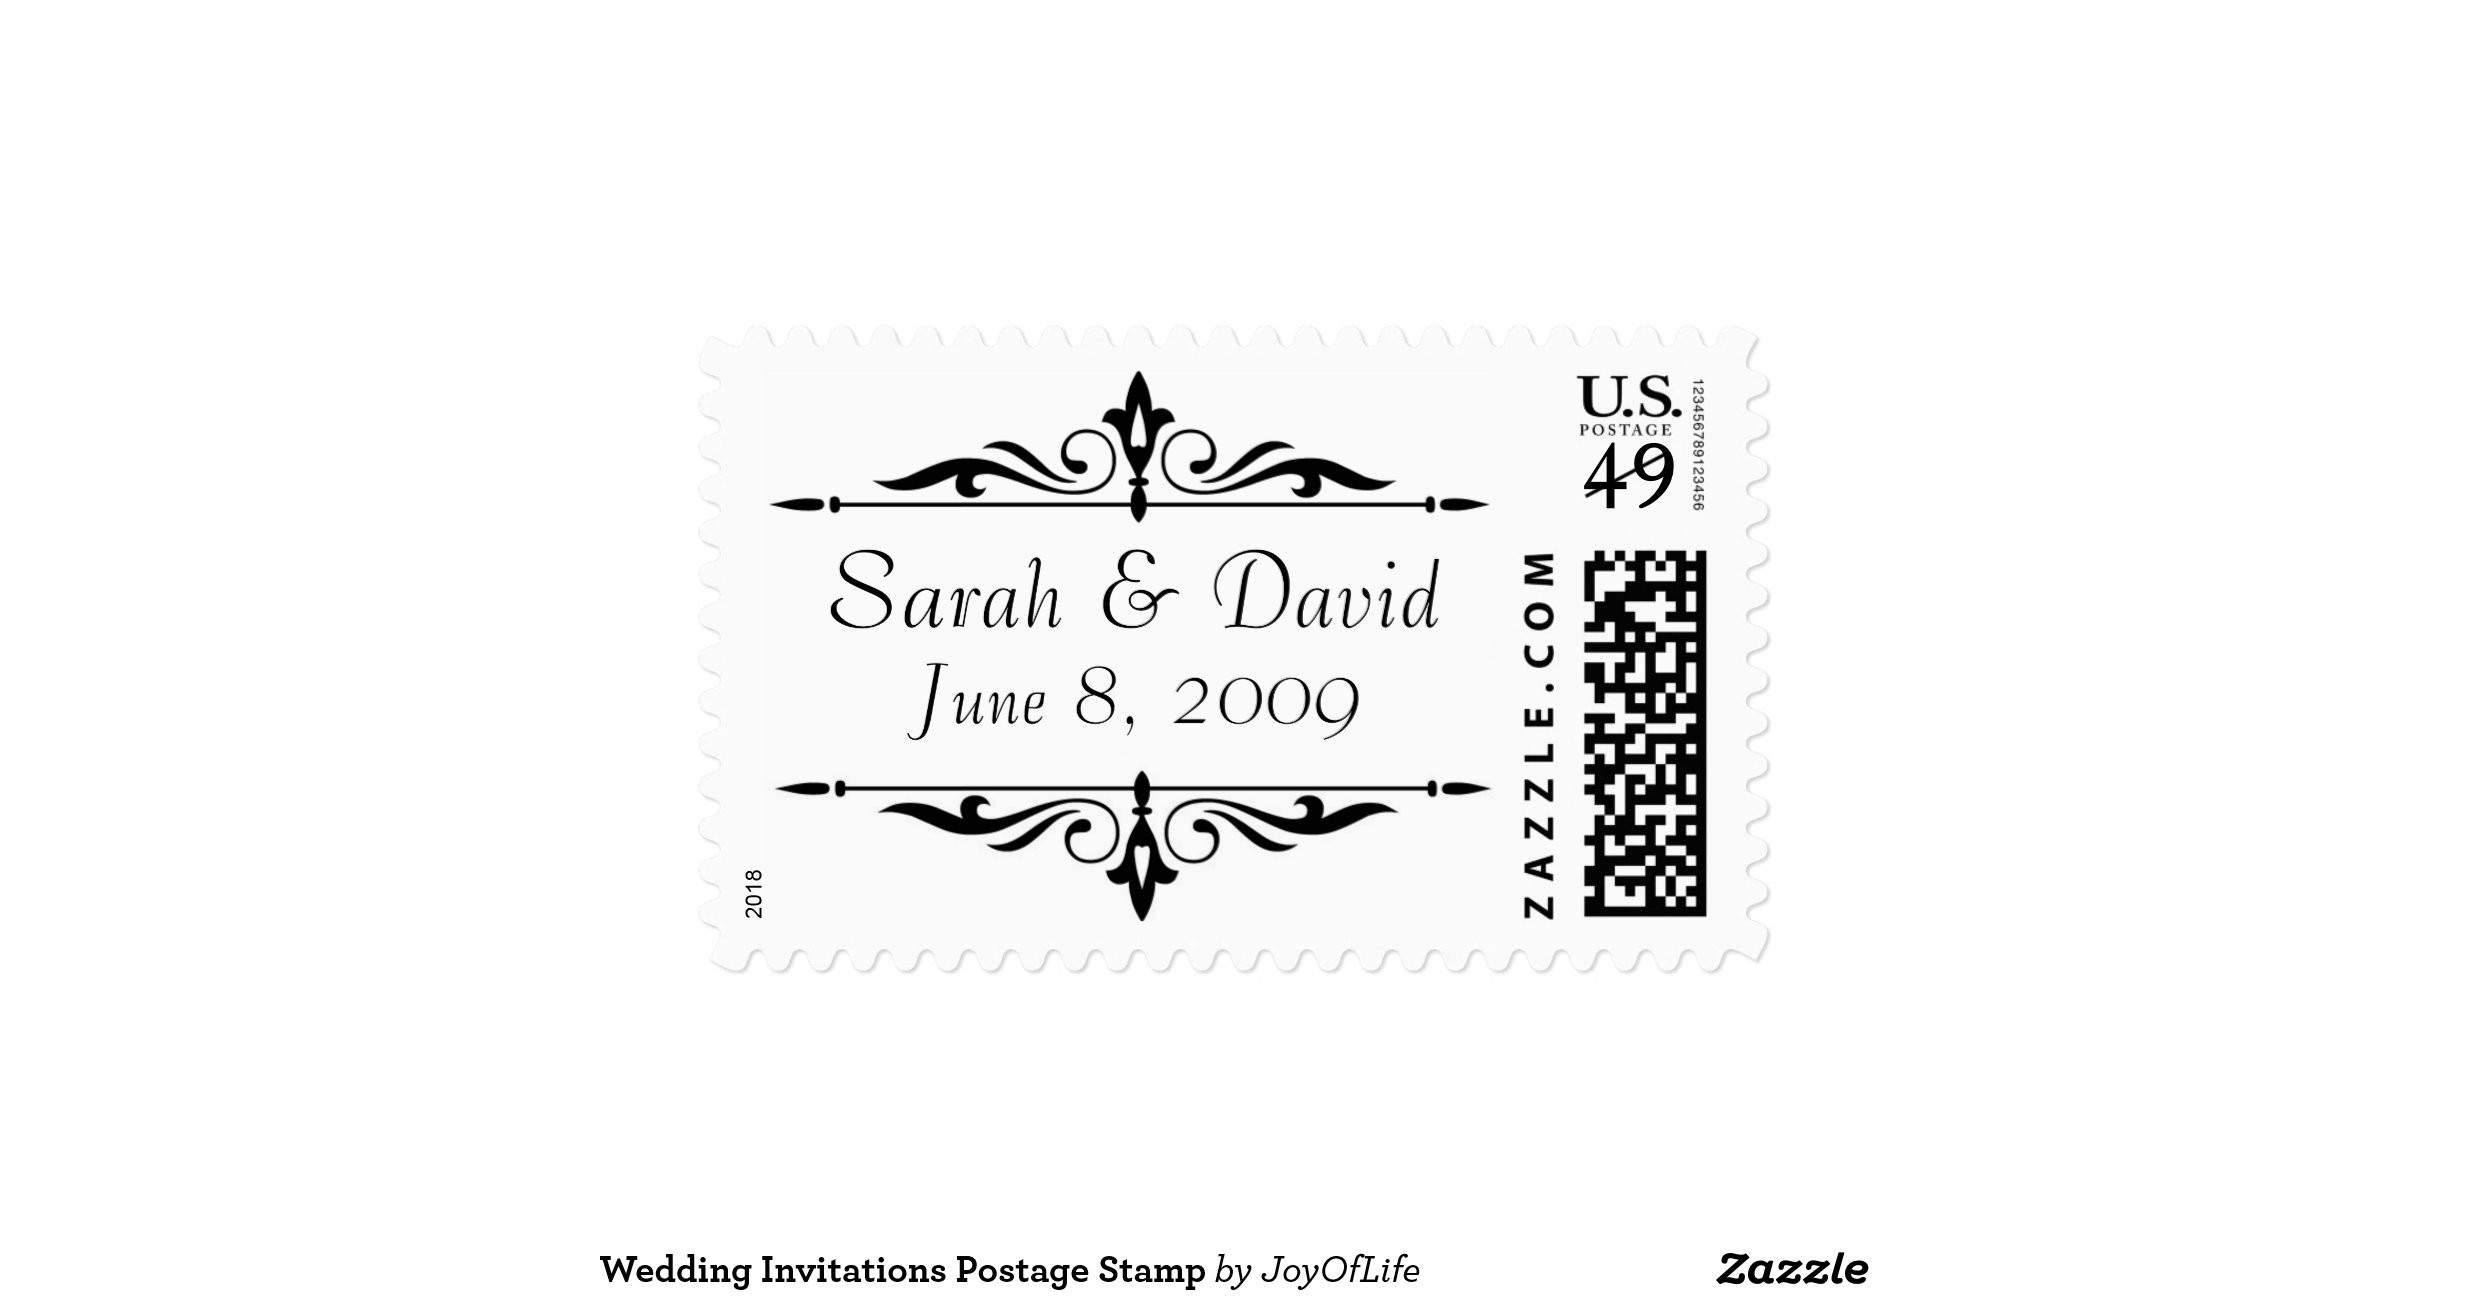 Wedding Invitation Postage
 wedding invitations postage stamp